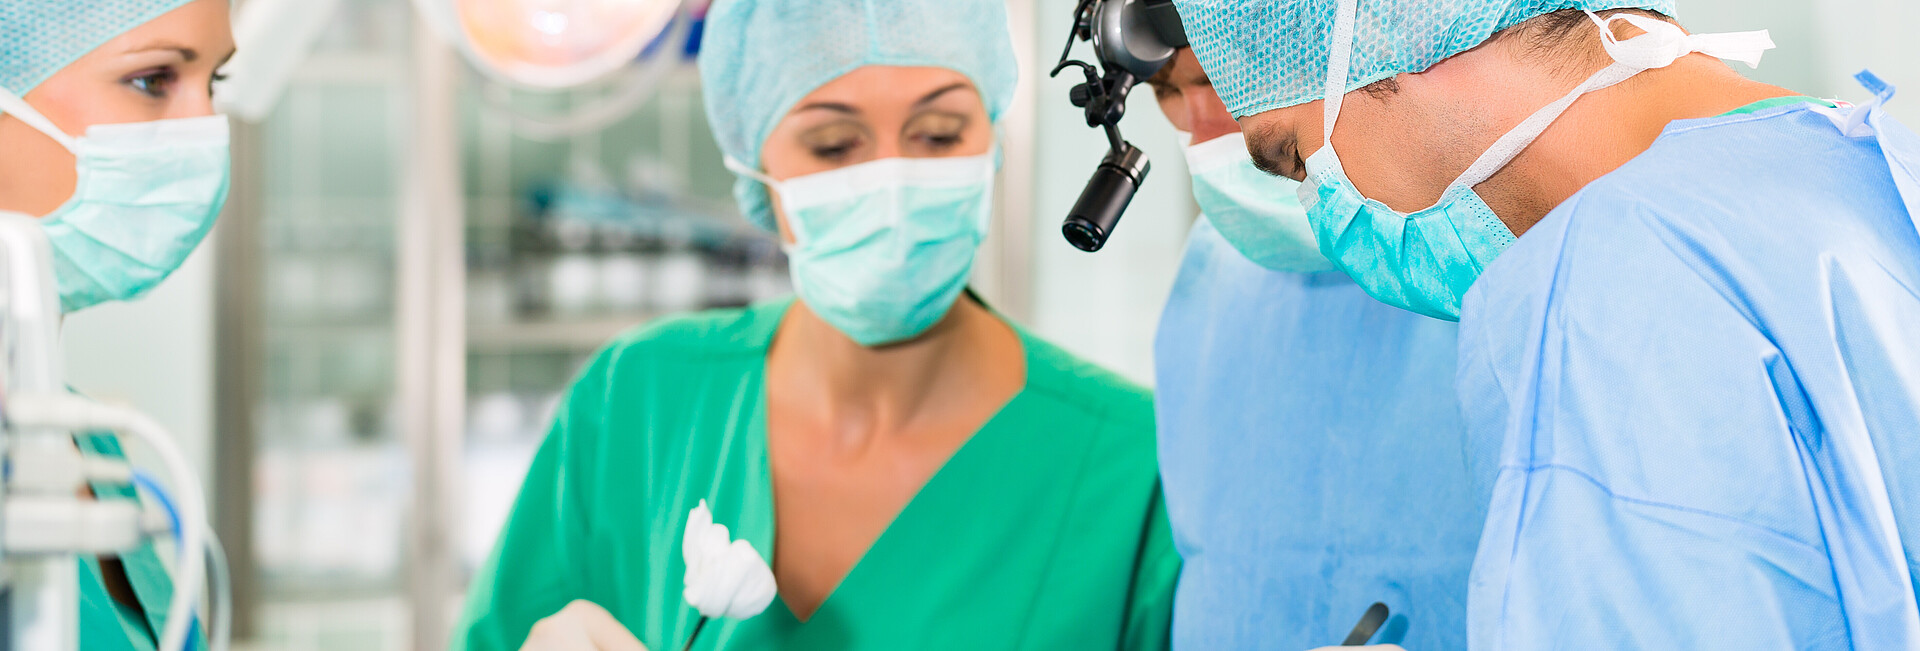 Ärzteteam im OP einer Klinik operiert einen Patienten, eine Assistentin reicht eine Tupferzange